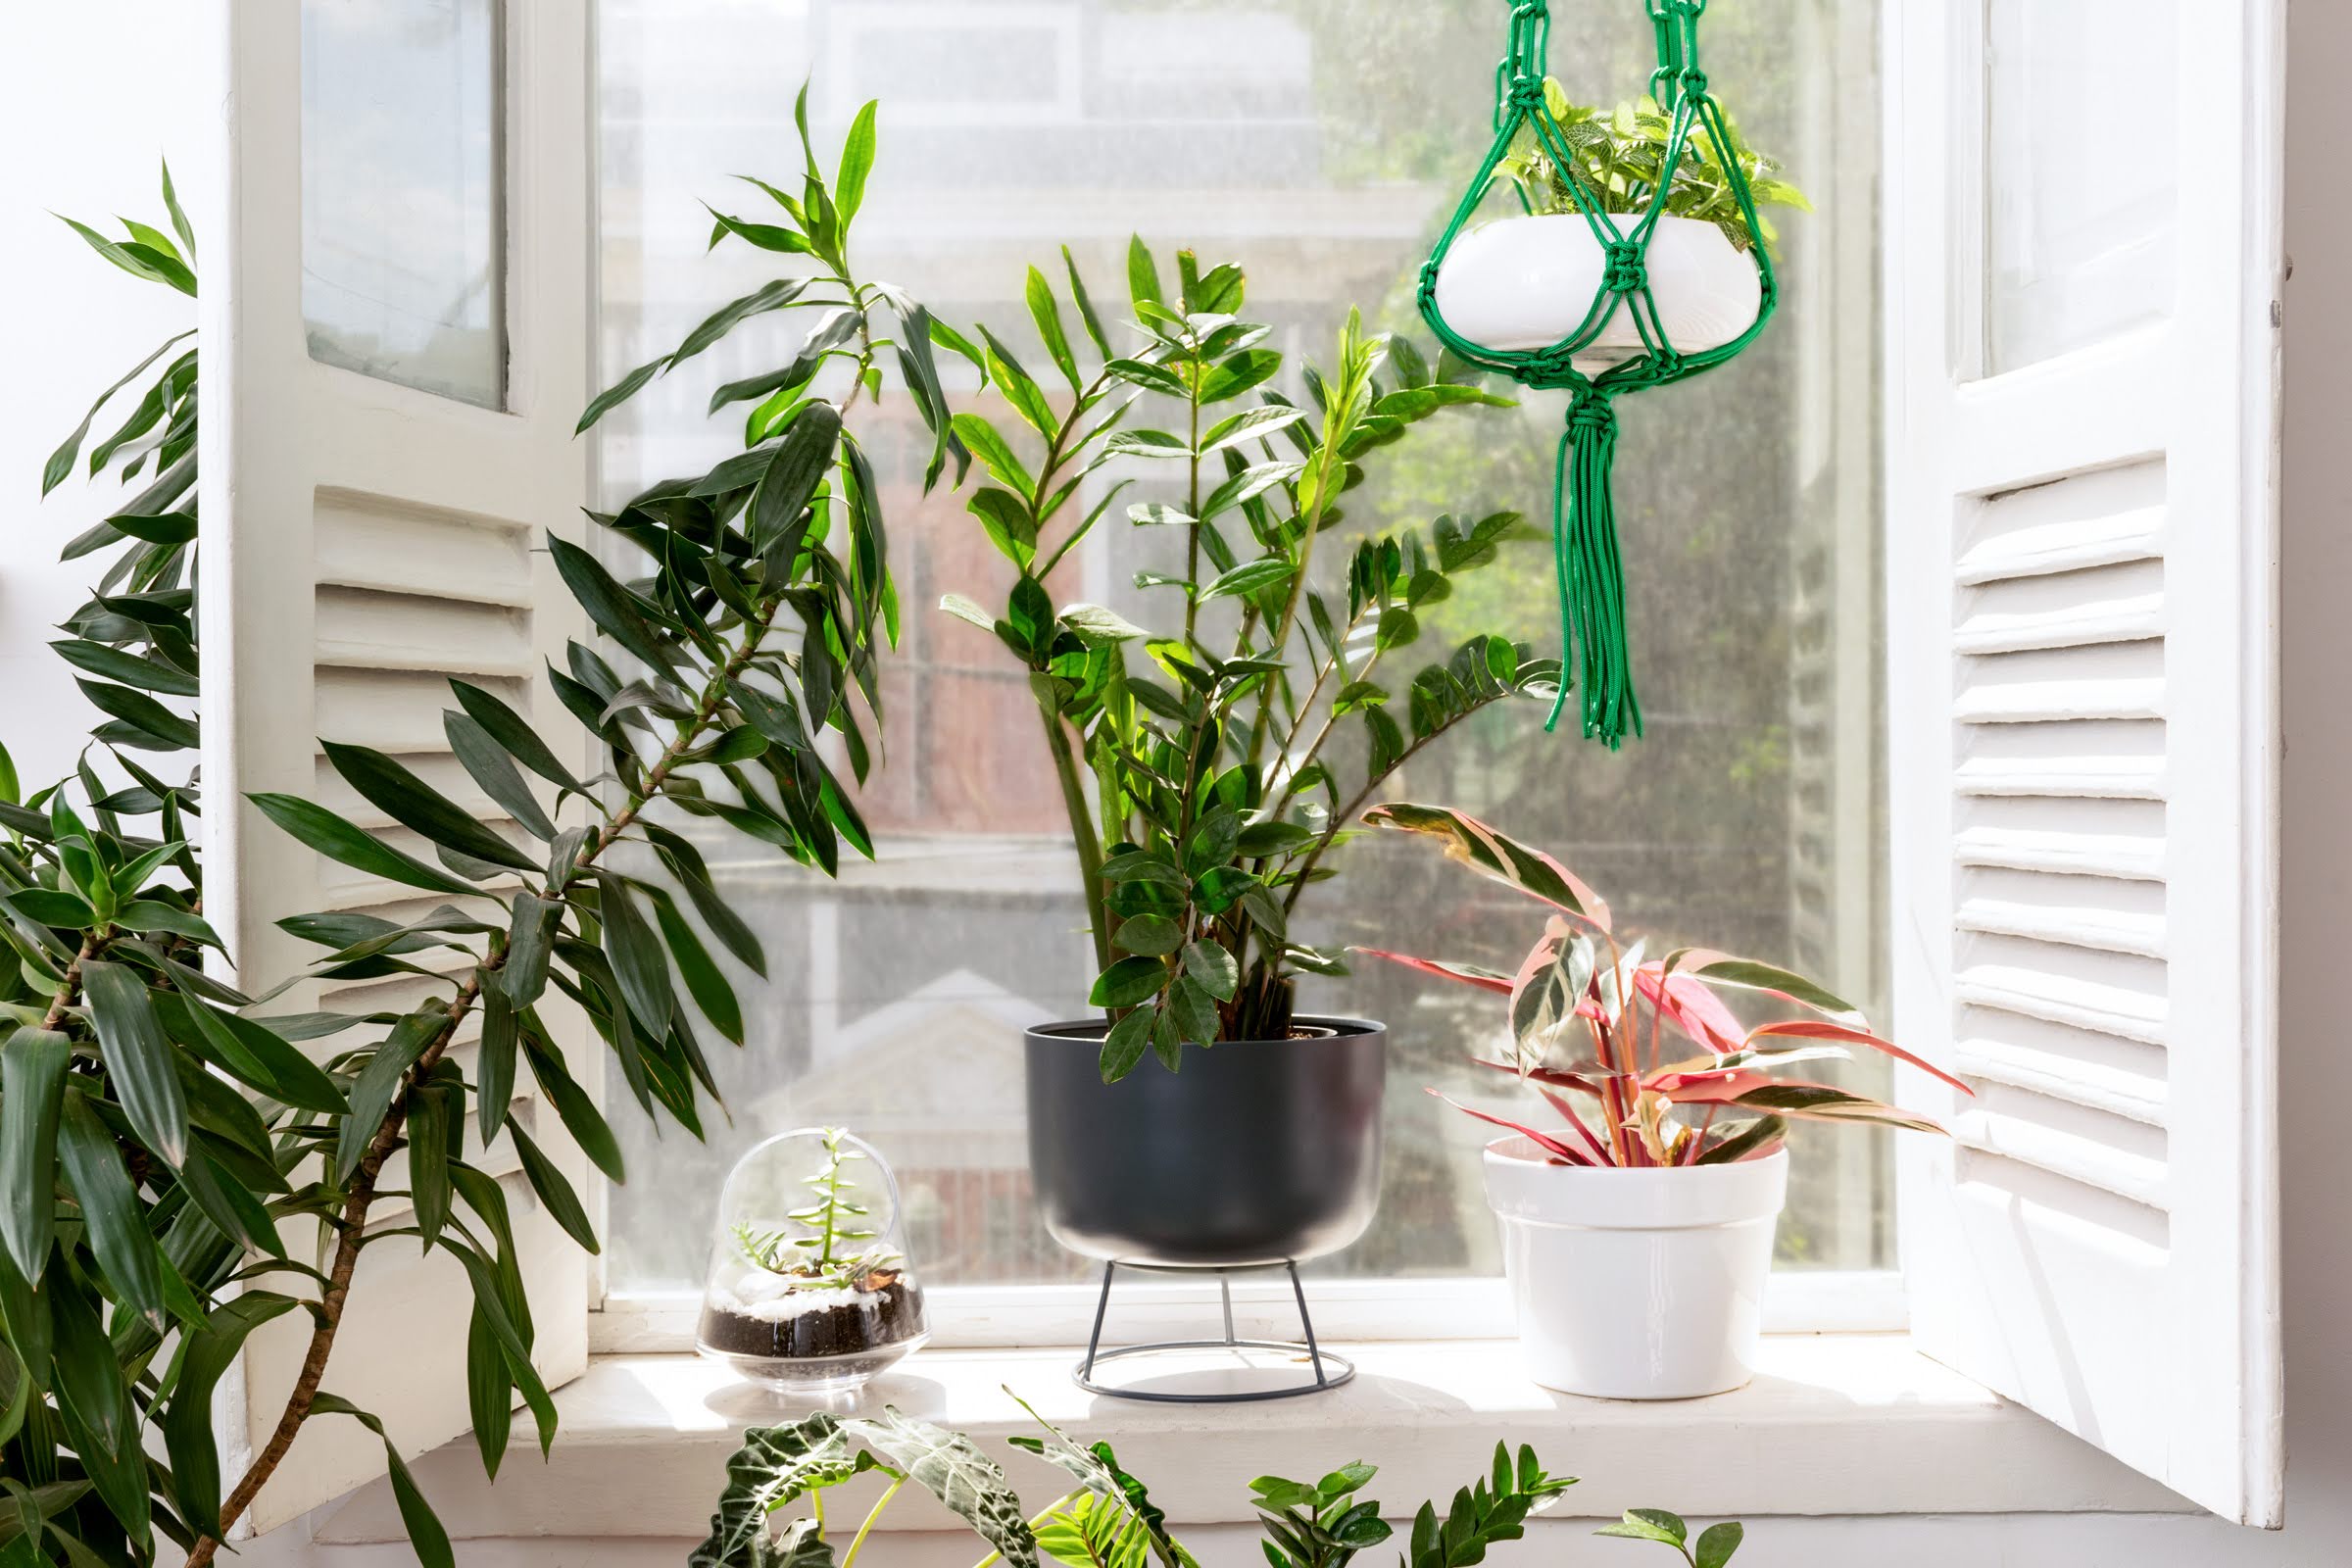 Na janela de uma casa se encontram algumas plantas e vasos, dentre eles um vaso de metal chumbo, um vaso branco e um terrário.